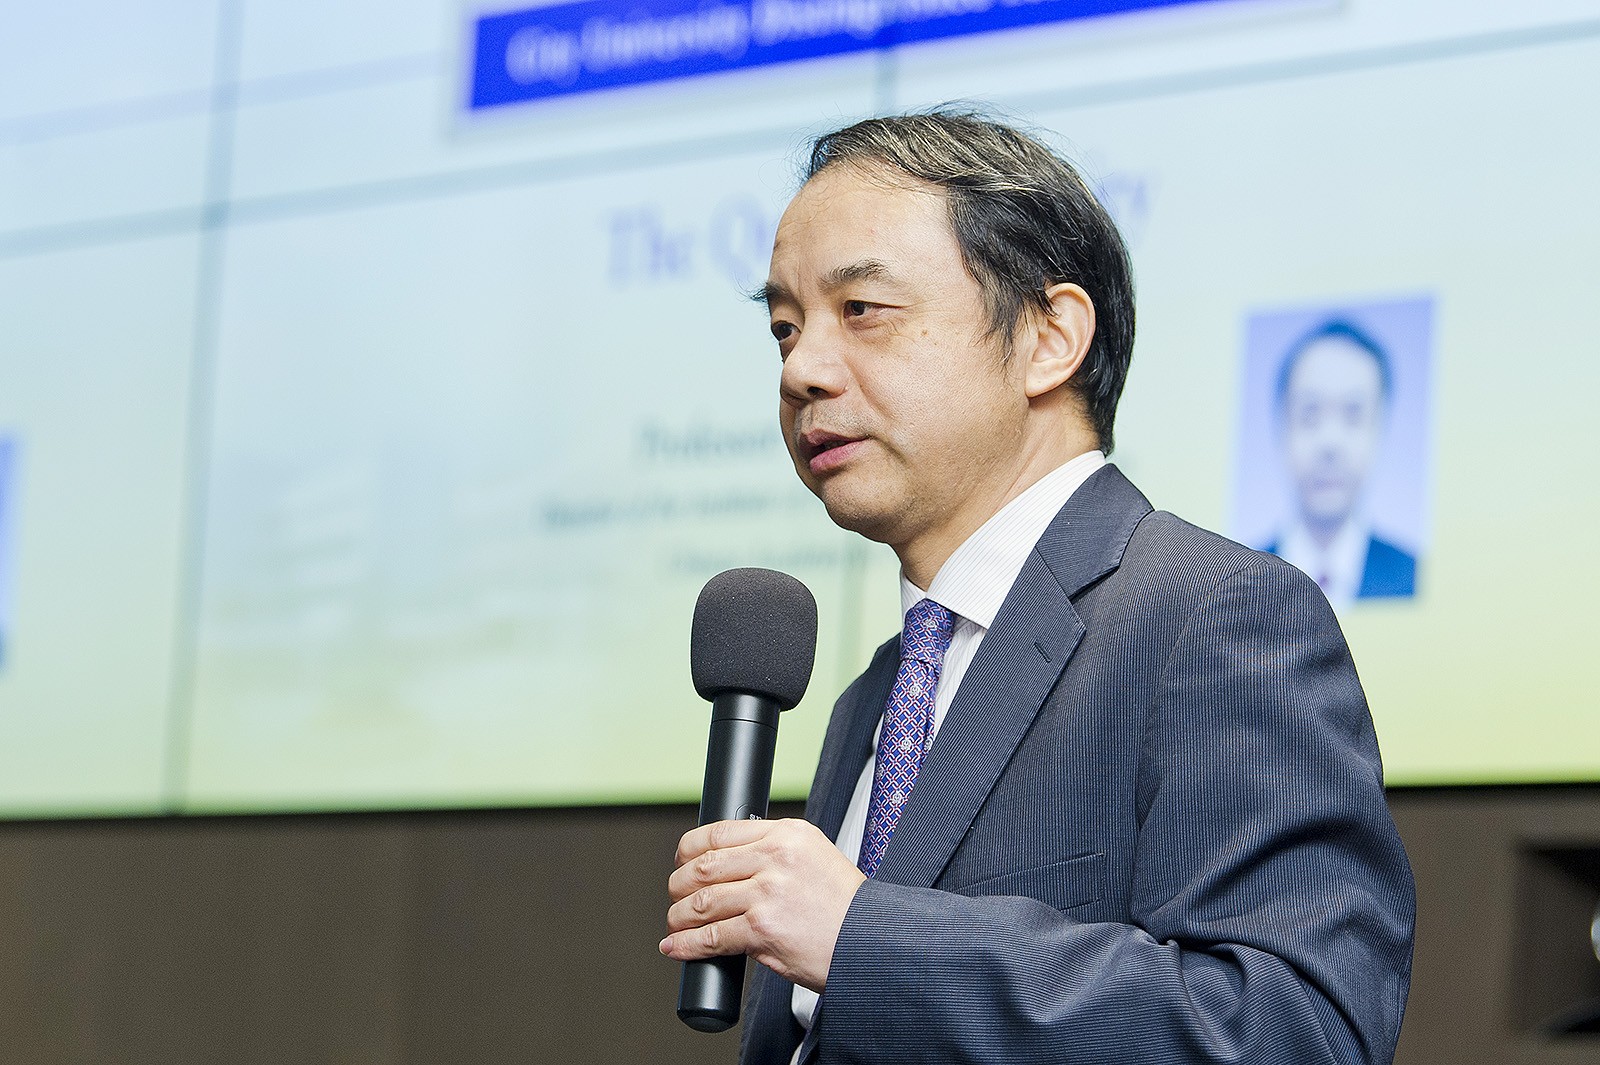 Professor Wang Yifang